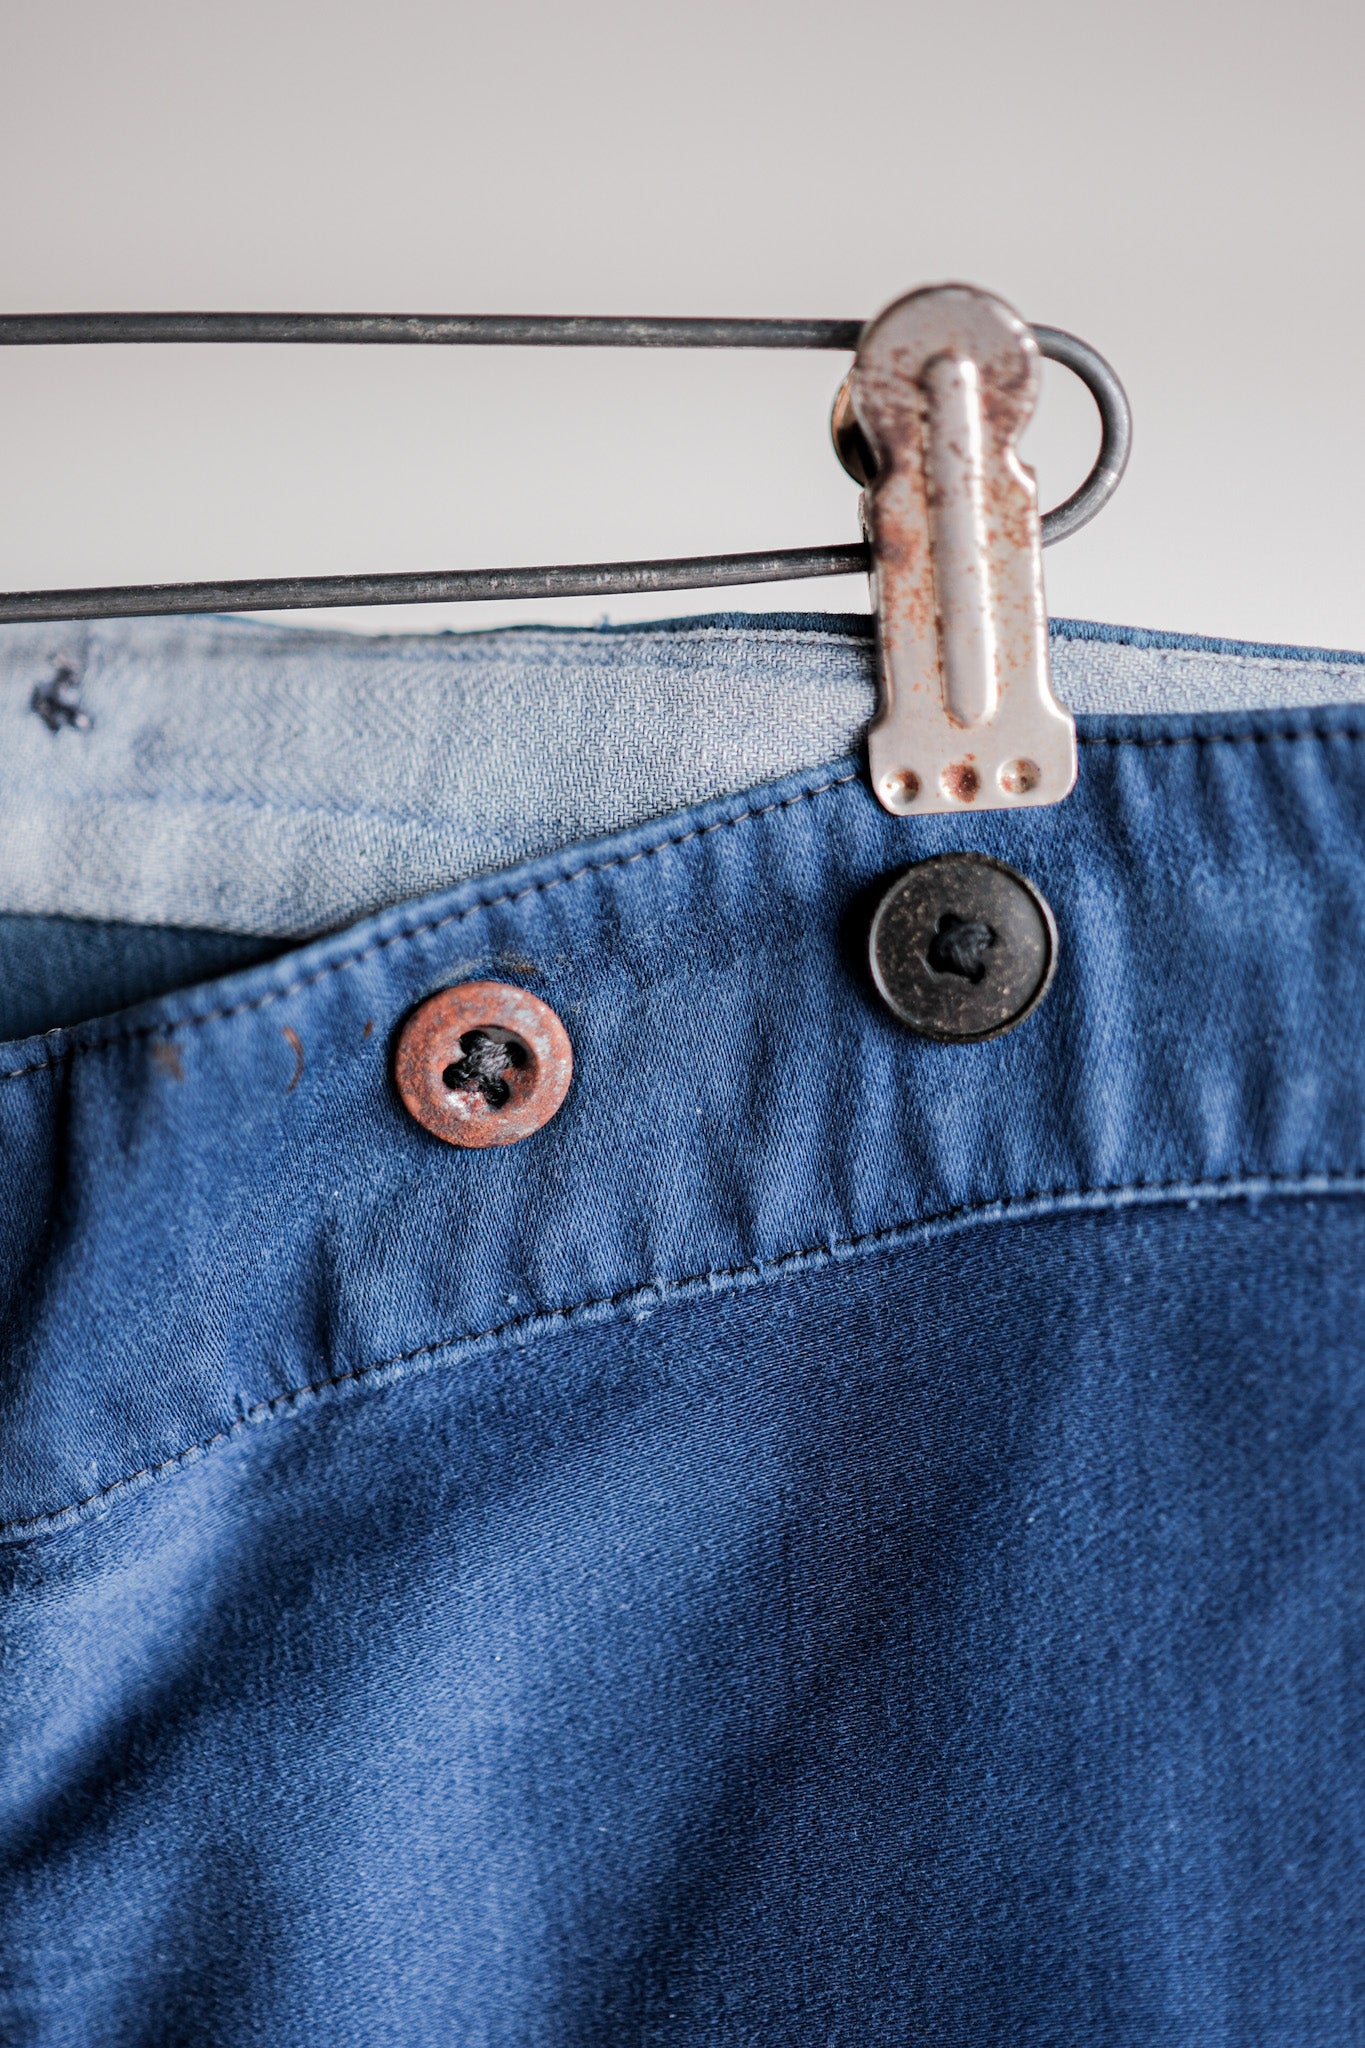 [~ 30's] Pantalon de travail de moleskin bleu vintage français "patchwork"